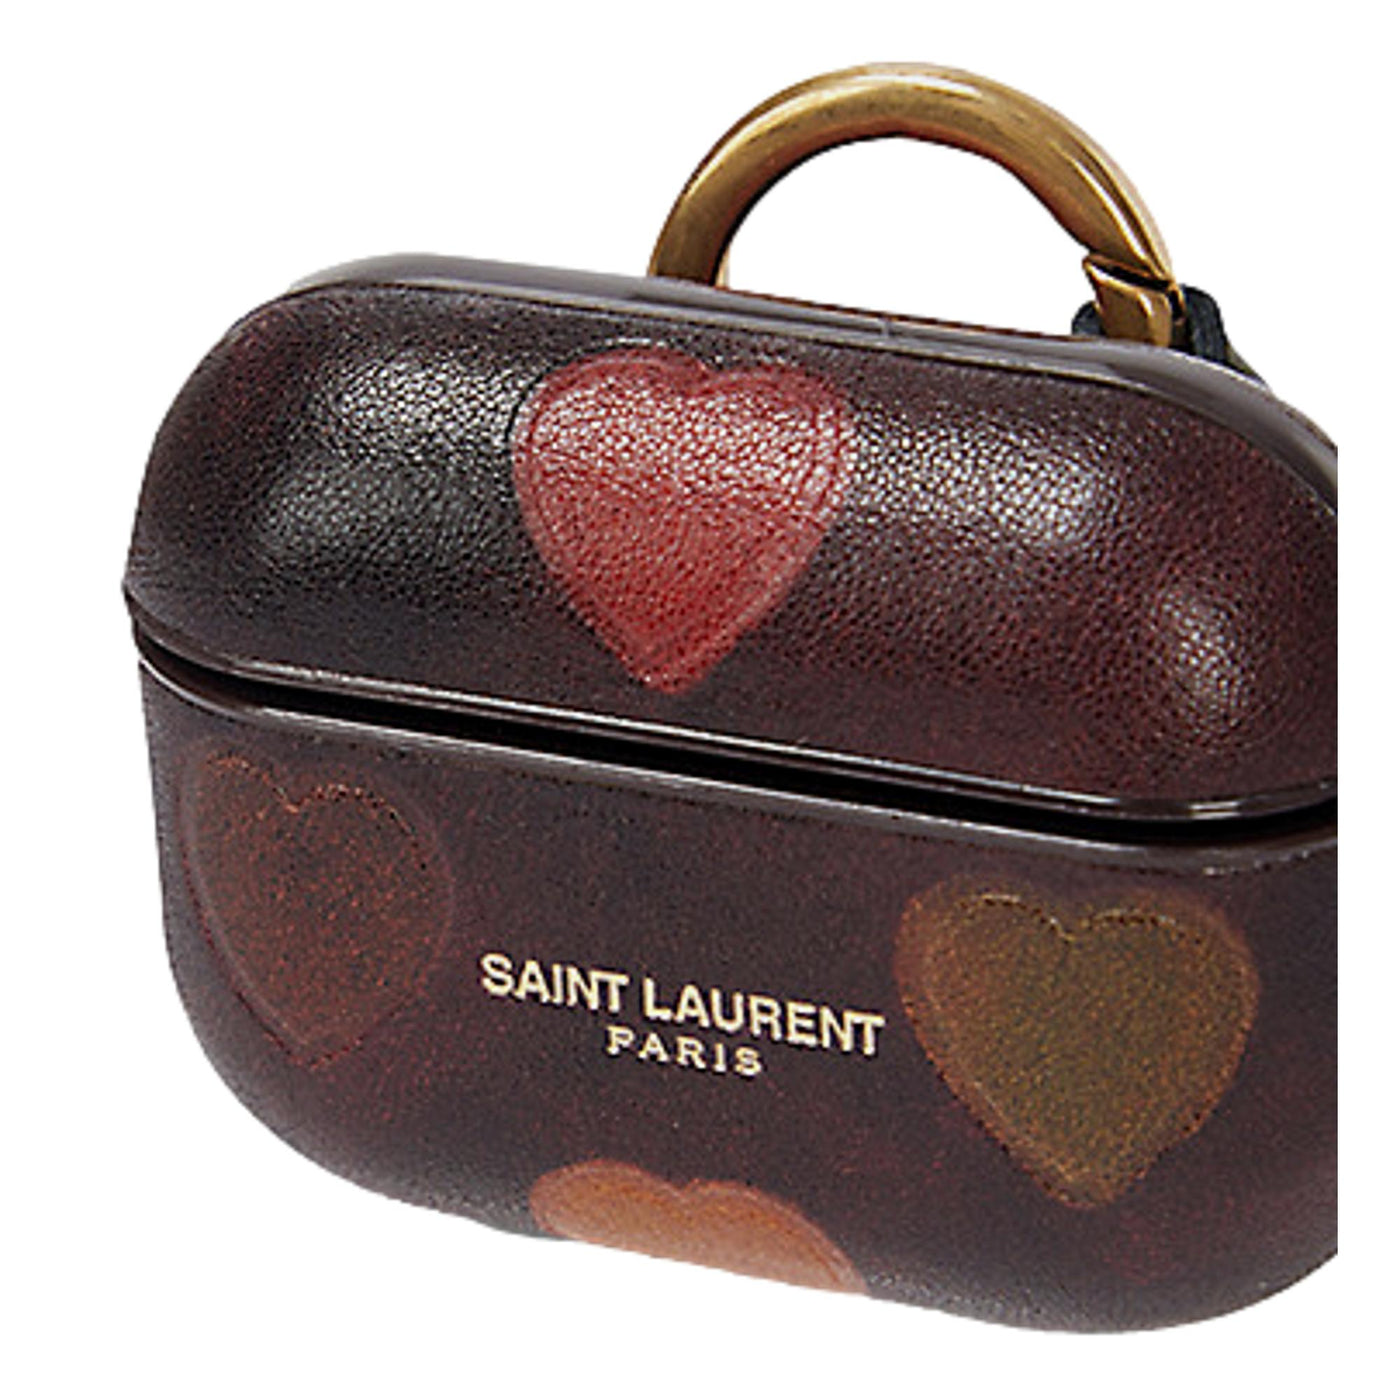 Saint Laurent Heart Printed Brown Textured Leather Airpods Case 641954 - LUXURYMRKT